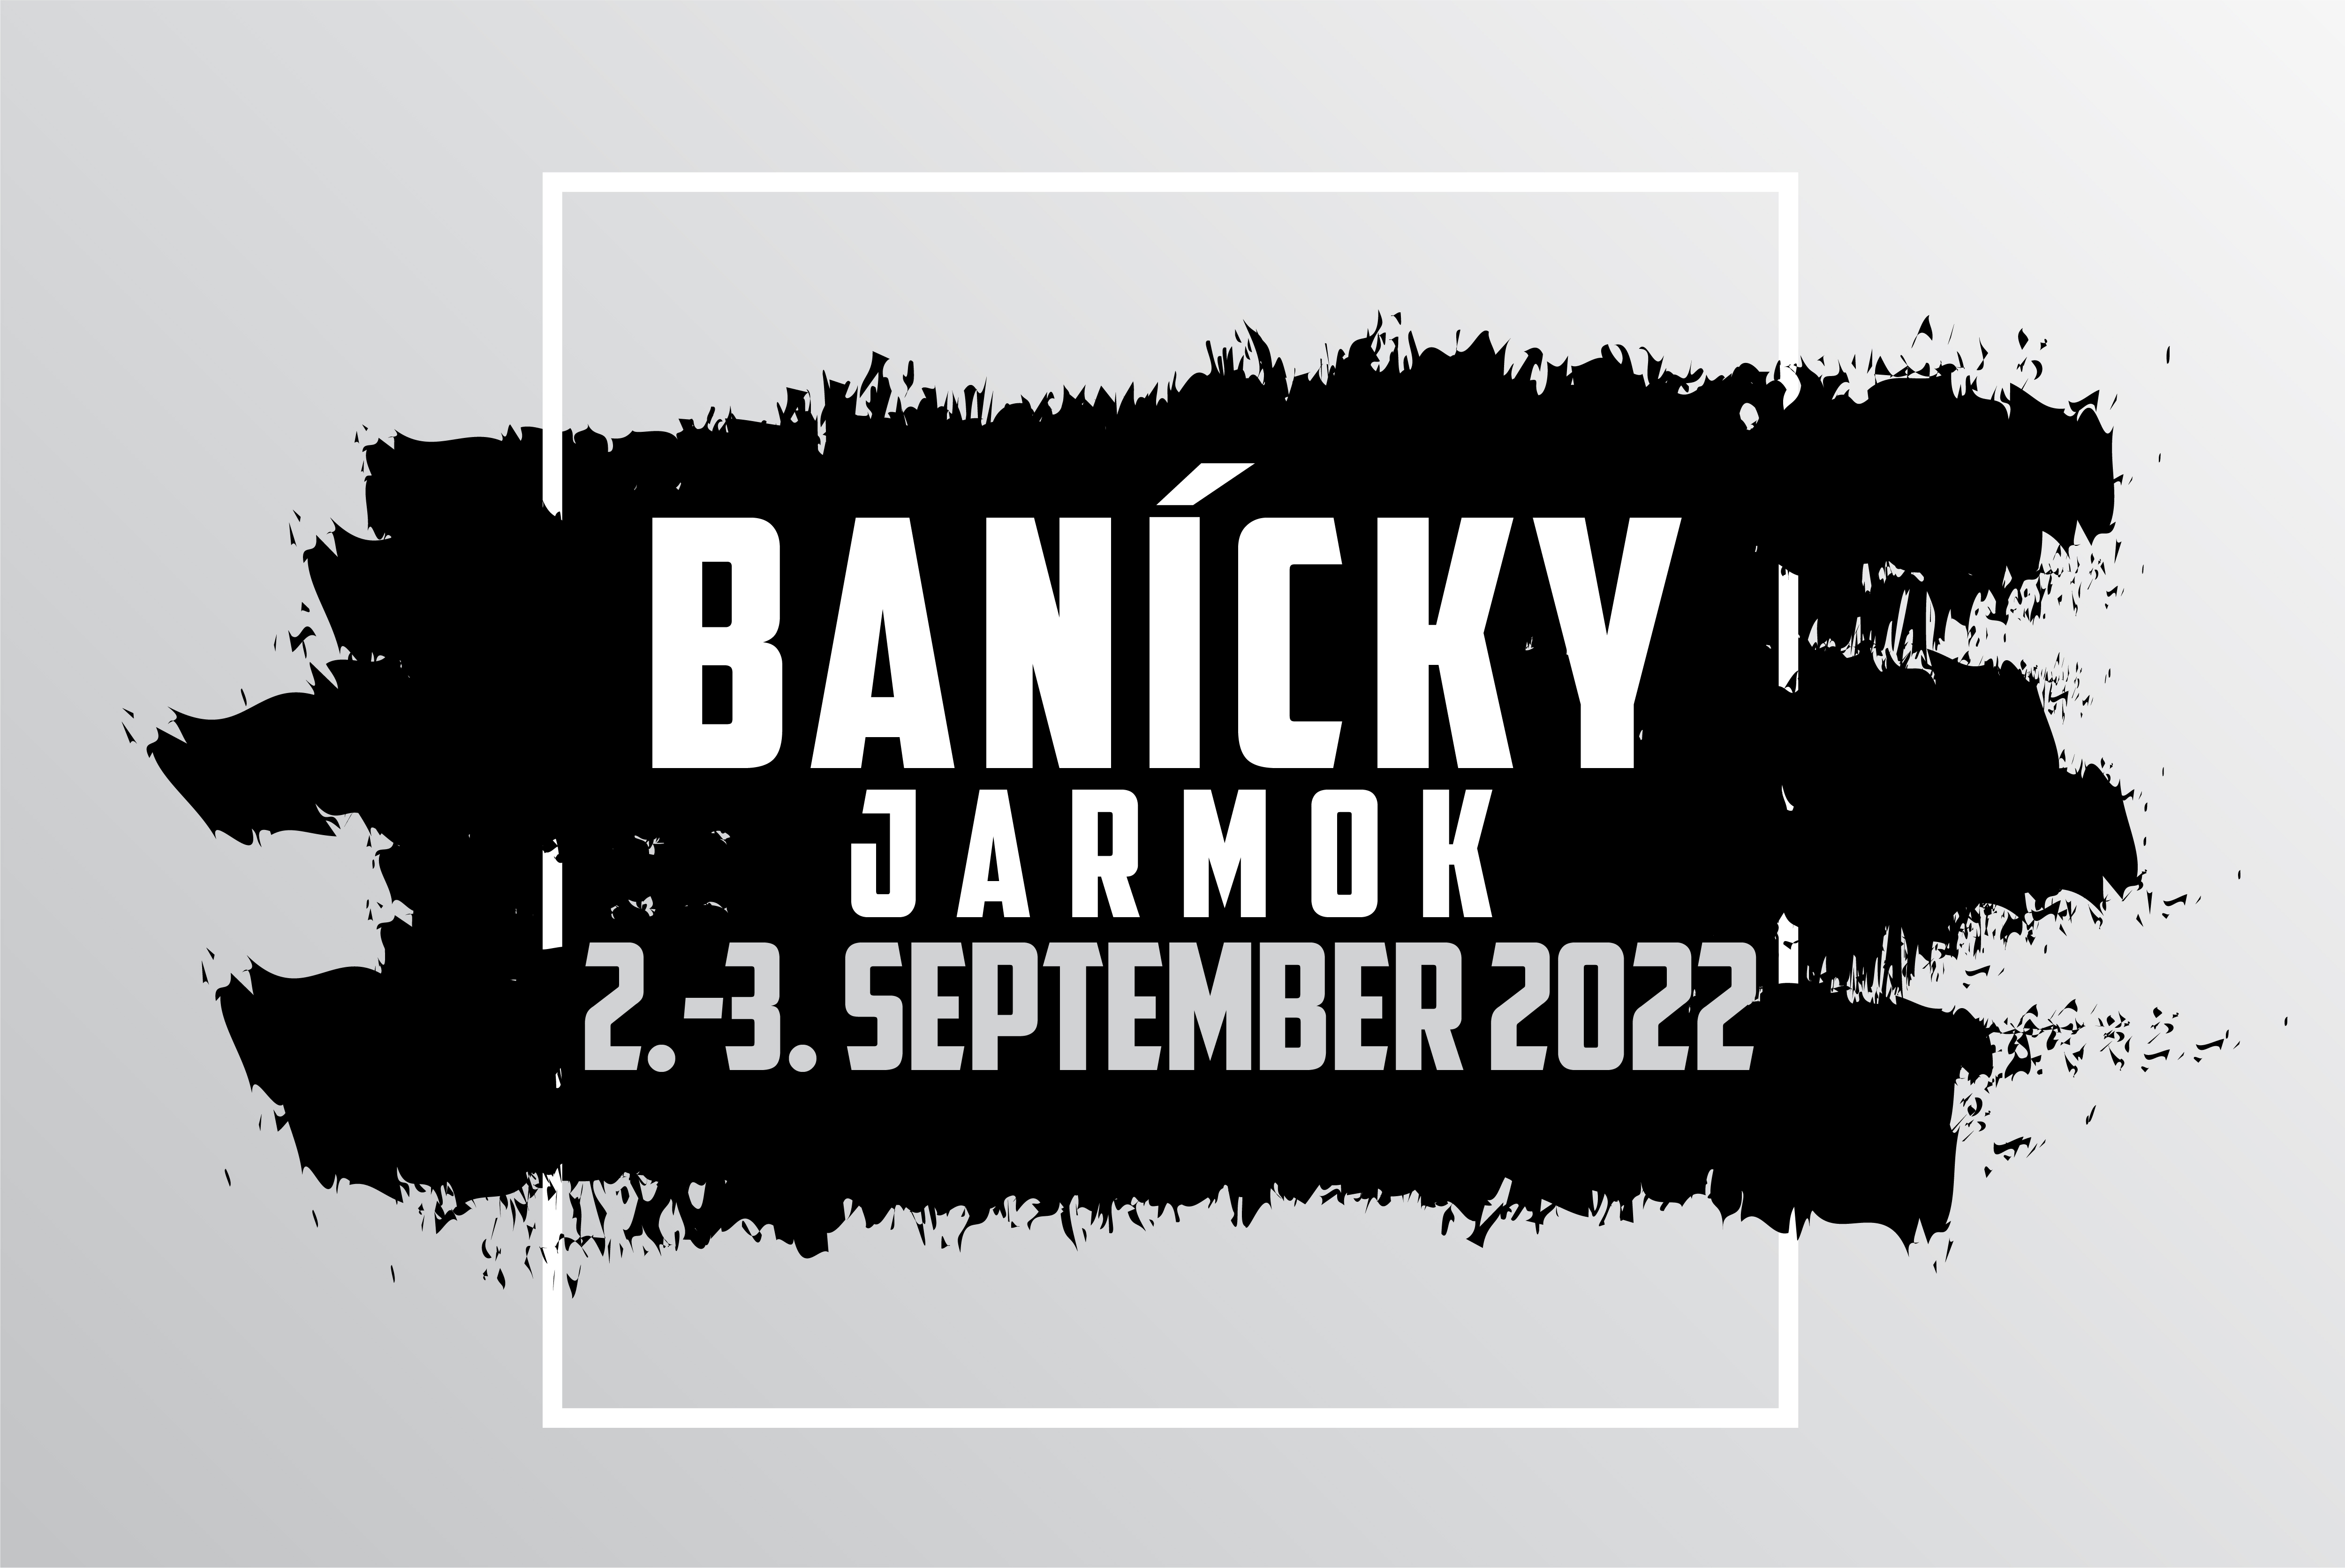 Banicky_Jarmok_Handlova_2022_1